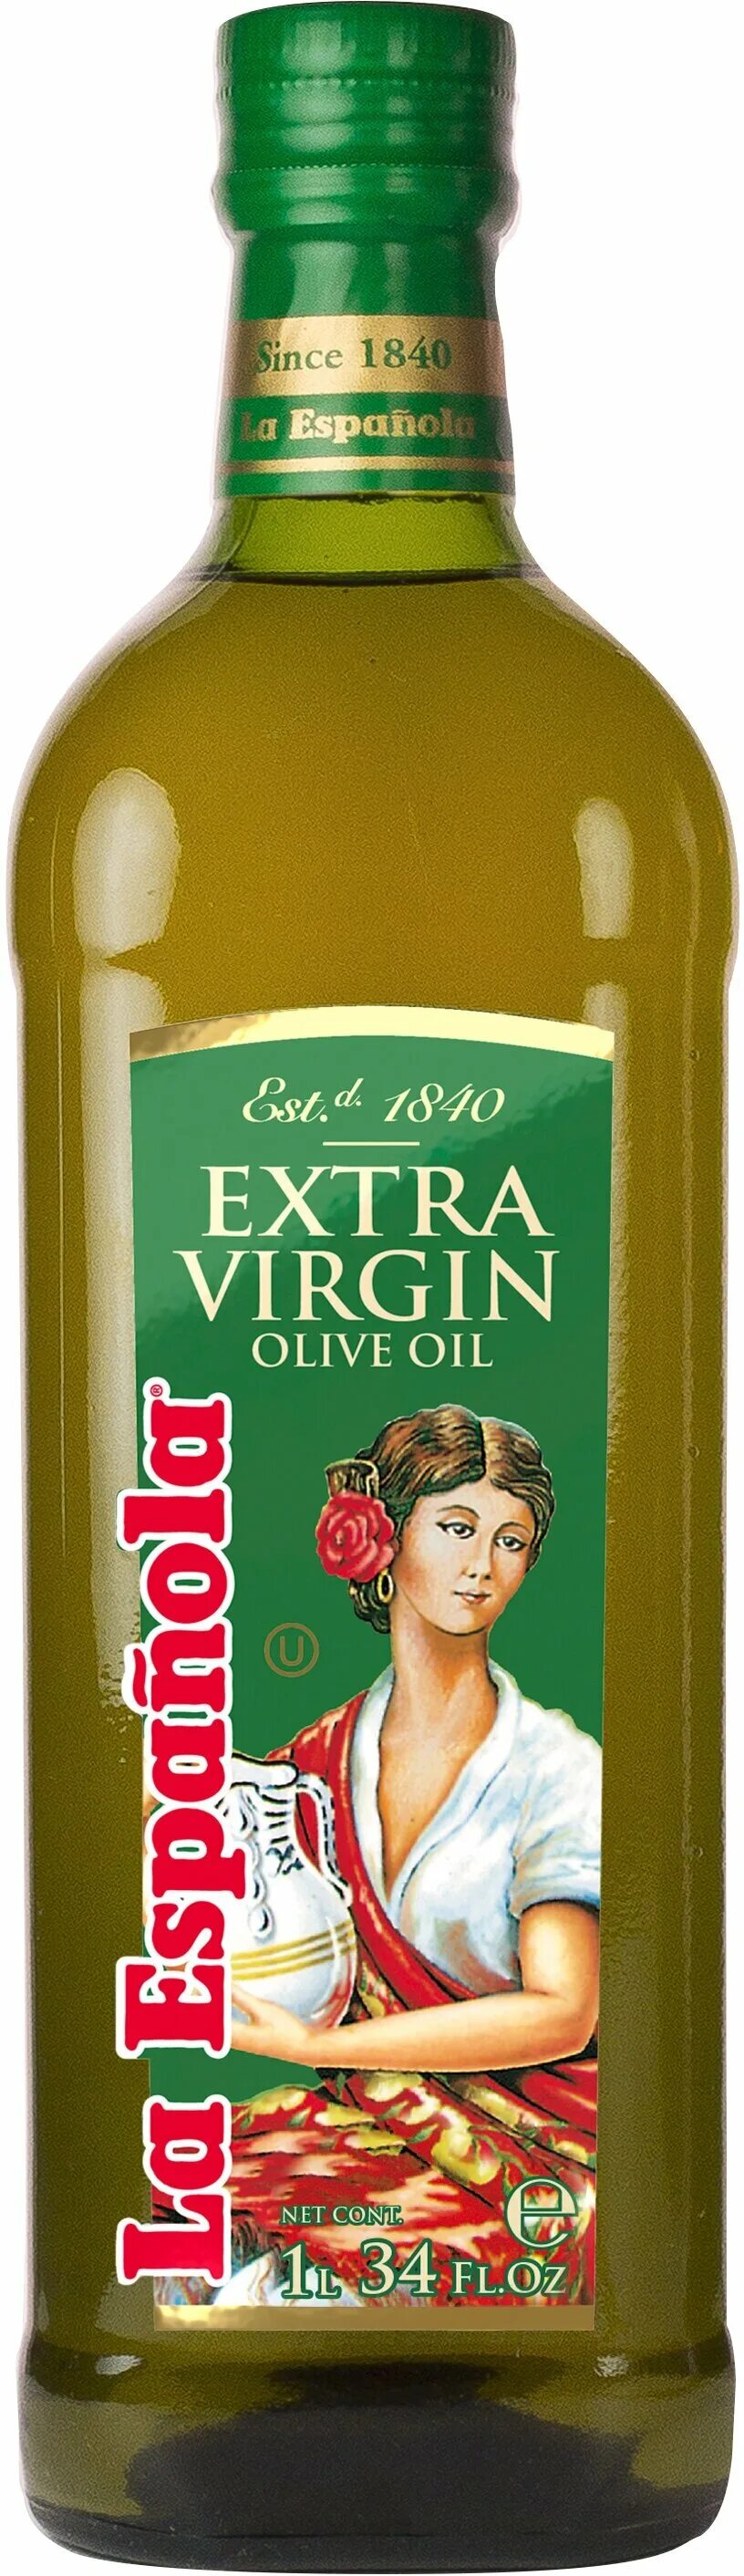 Оливковое масло la espanola Extra Virgin 500 мл. Масло оливковое Extra Virgin 1л ст/б. Масло Extra Virgin "la espanola" пл./б. Оливковое масло 1 прессования.